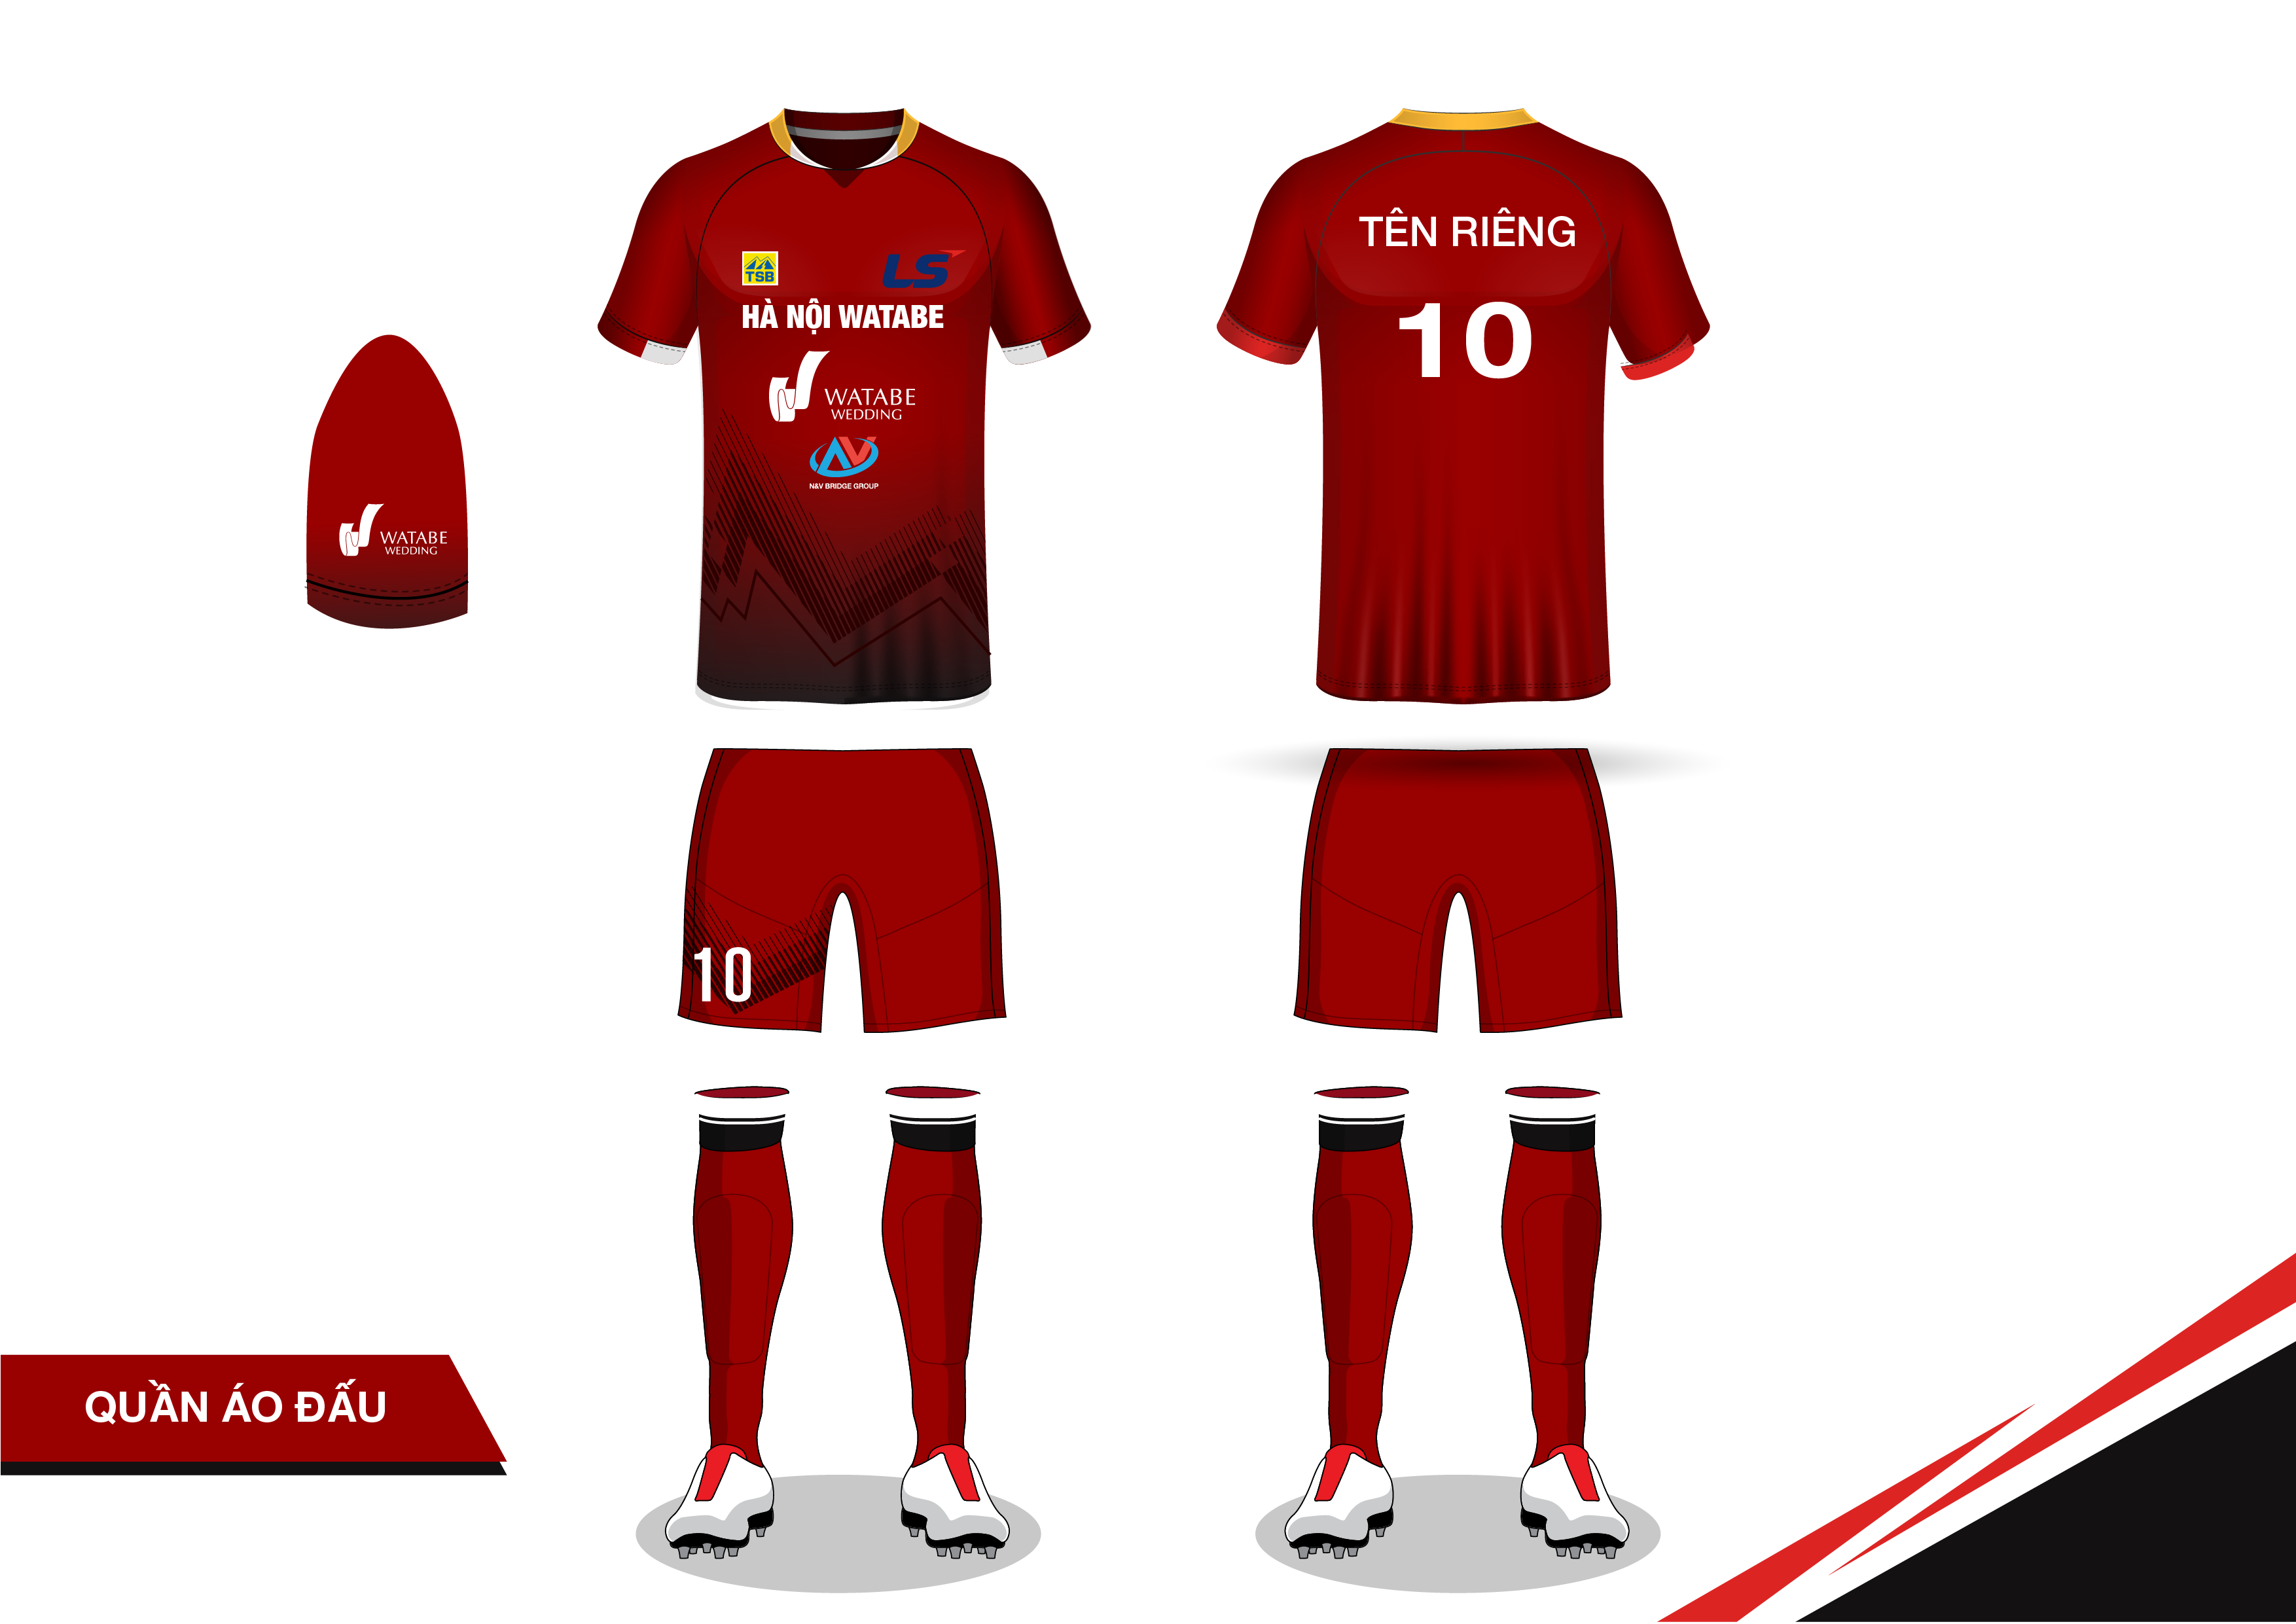 N V Bridge Groupの貢献により 年シーズンにハノイ女子サッカーチームの公式ユニフォームを発表 Nv Bridge